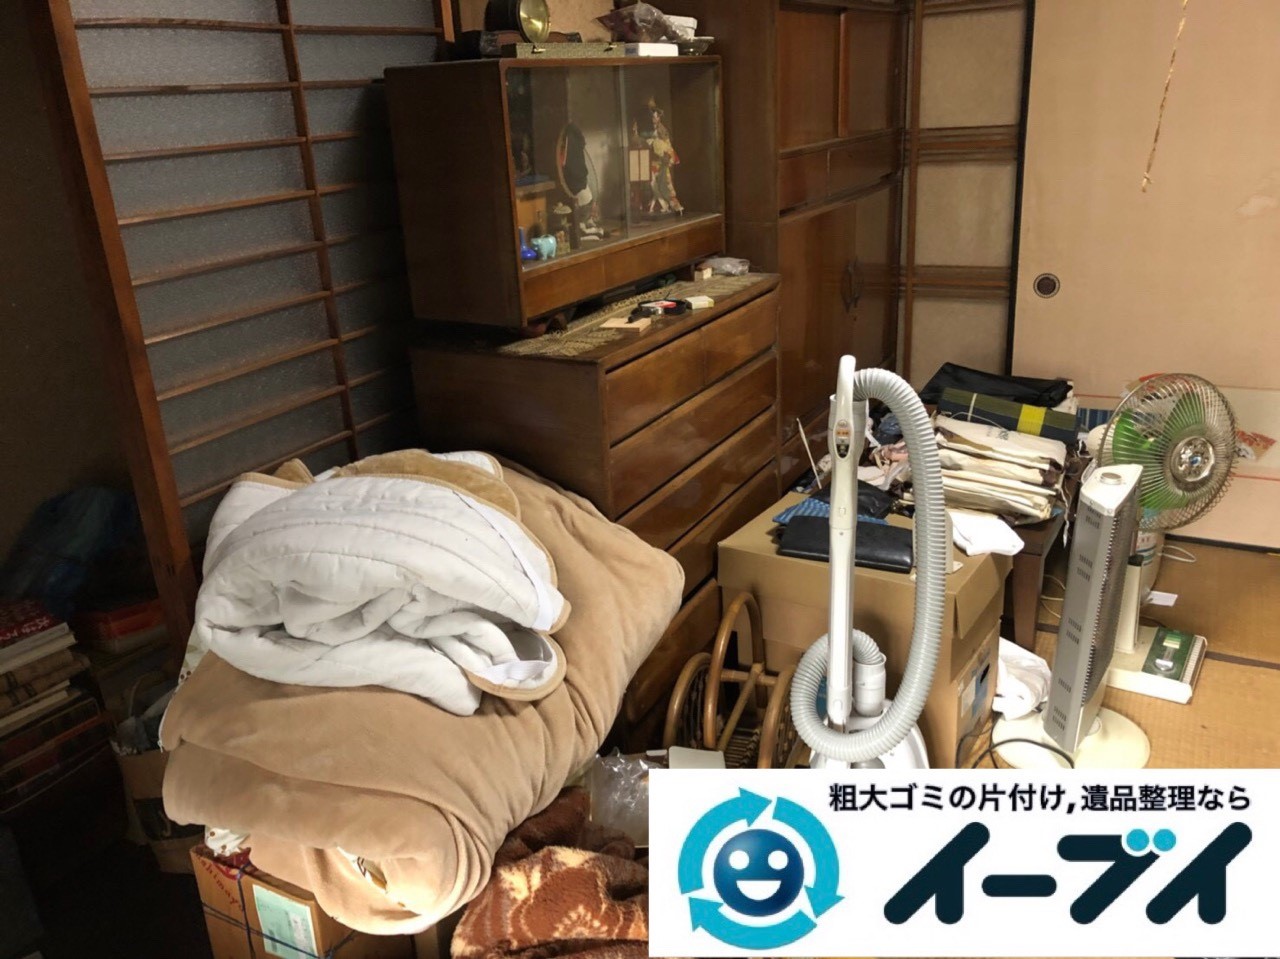 2018年12月5日大阪府吹田市で転居に伴い不要な家具や生活用品などの片付け処分。写真2